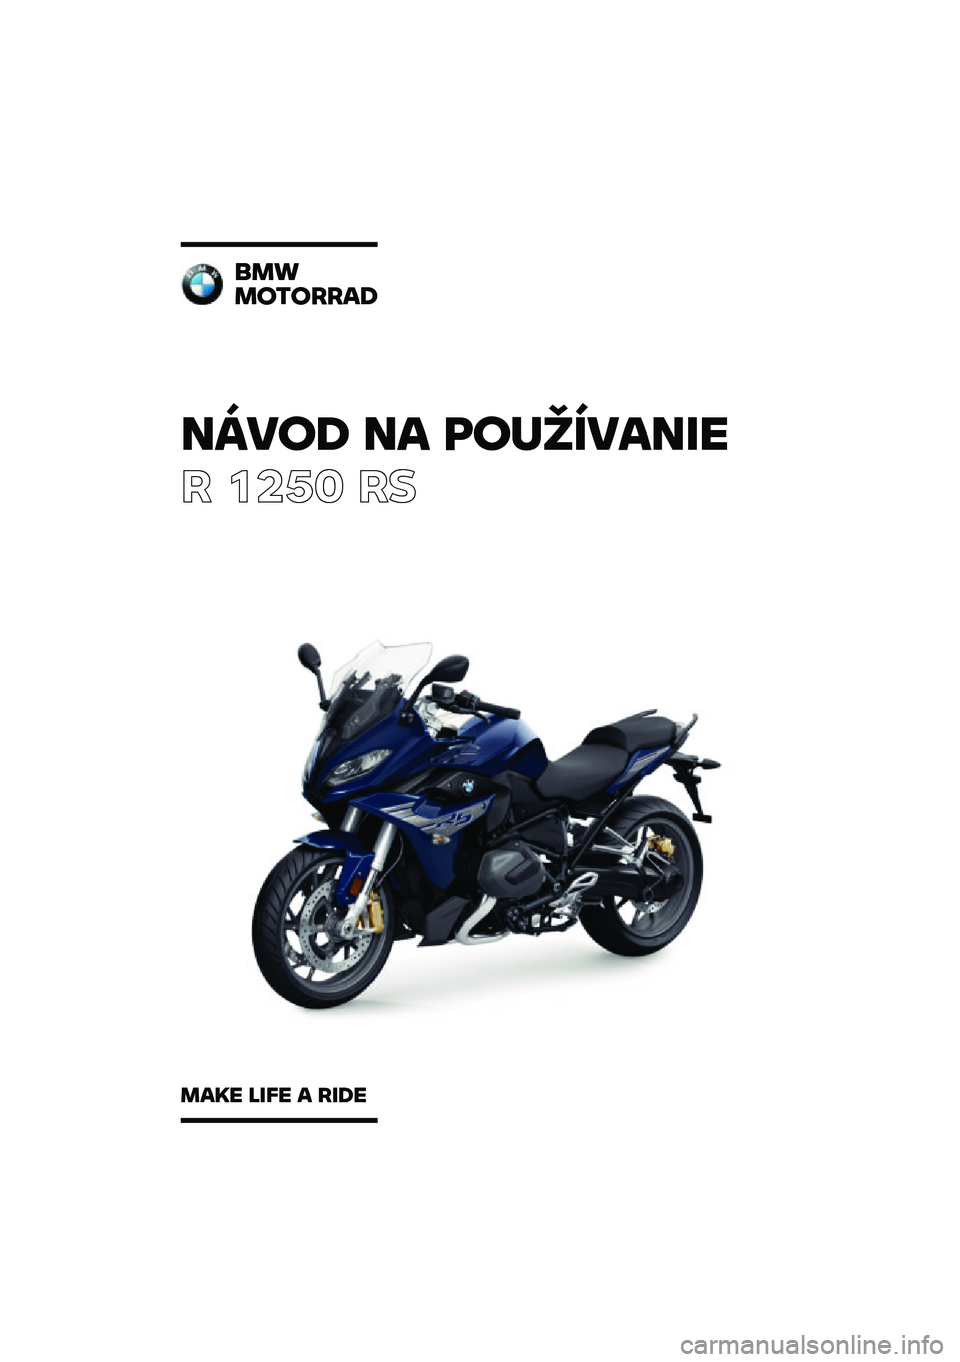 BMW MOTORRAD R 1250 RS 2020  Návod na používanie (in Slovak) �����\b �� �	��
�������
� ����	 ��
���
��������\b
���� ���� � ���\b� 